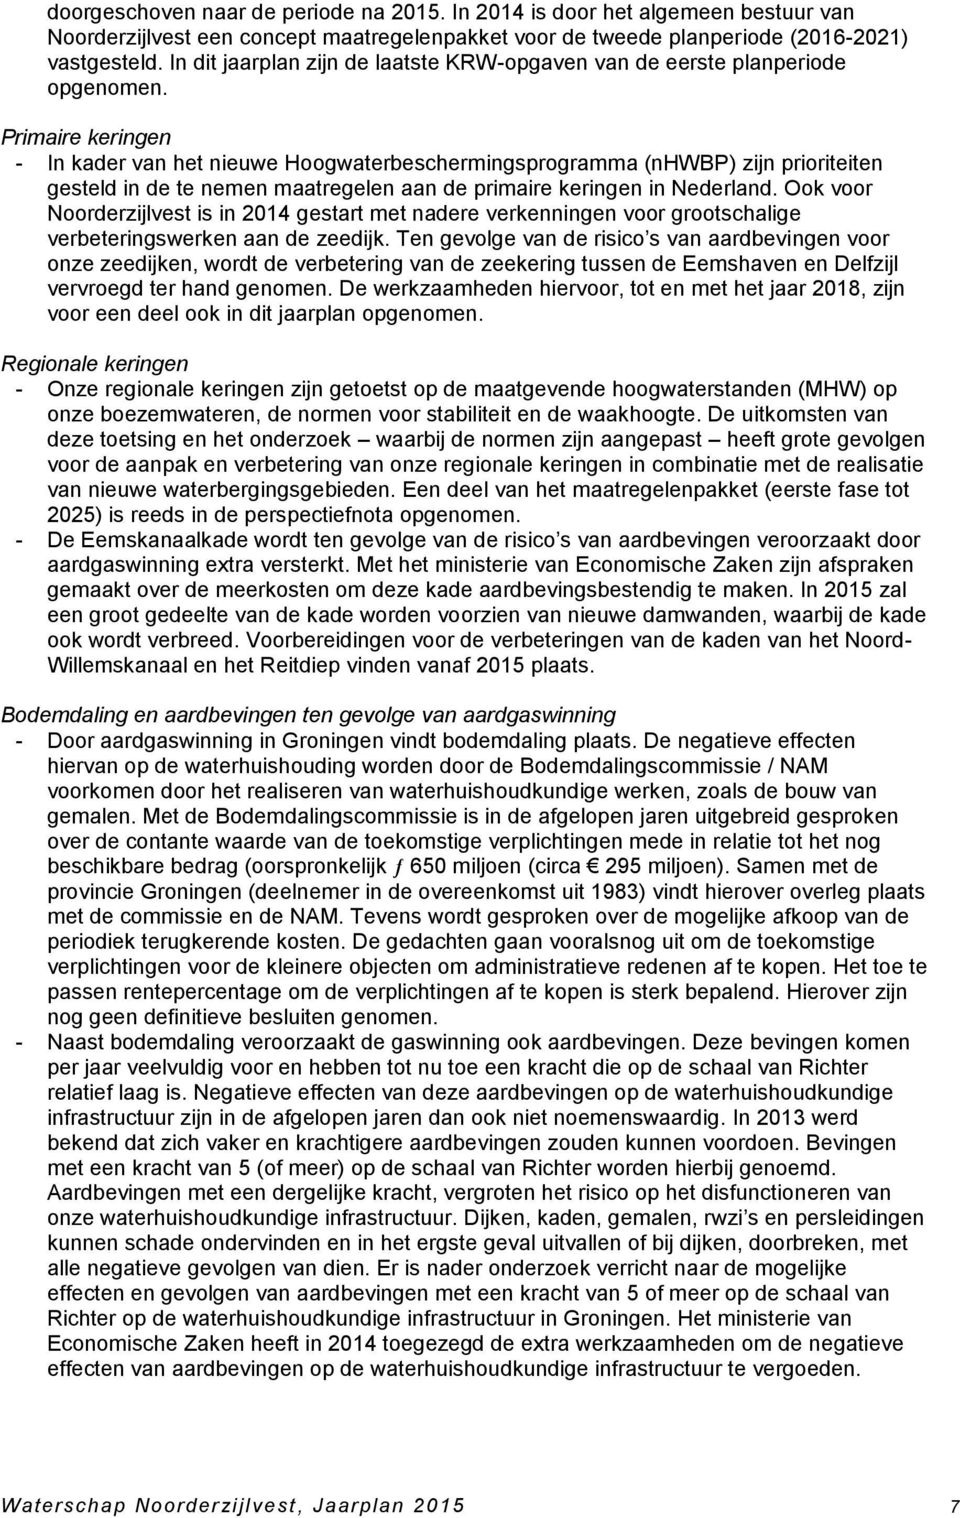 Primaire keringen - In kader van het nieuwe Hoogwaterbeschermingsprogramma (nhwbp) zijn prioriteiten gesteld in de te nemen maatregelen aan de primaire keringen in Nederland.